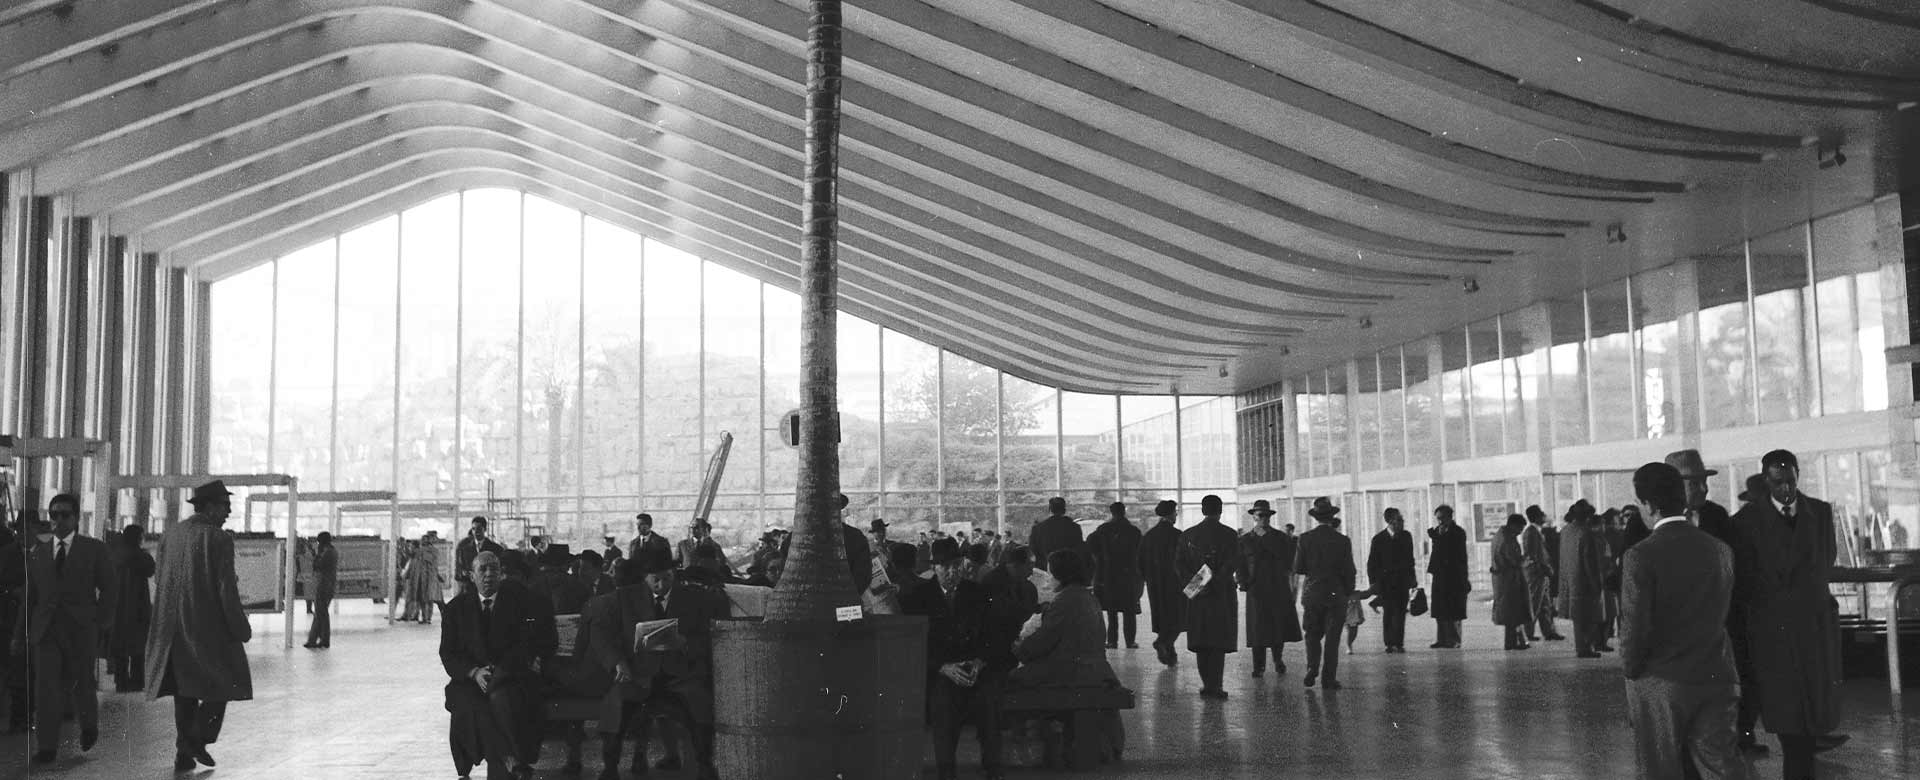 Immagine del 1959 dell'atrio della biglietteria di Roma Termini